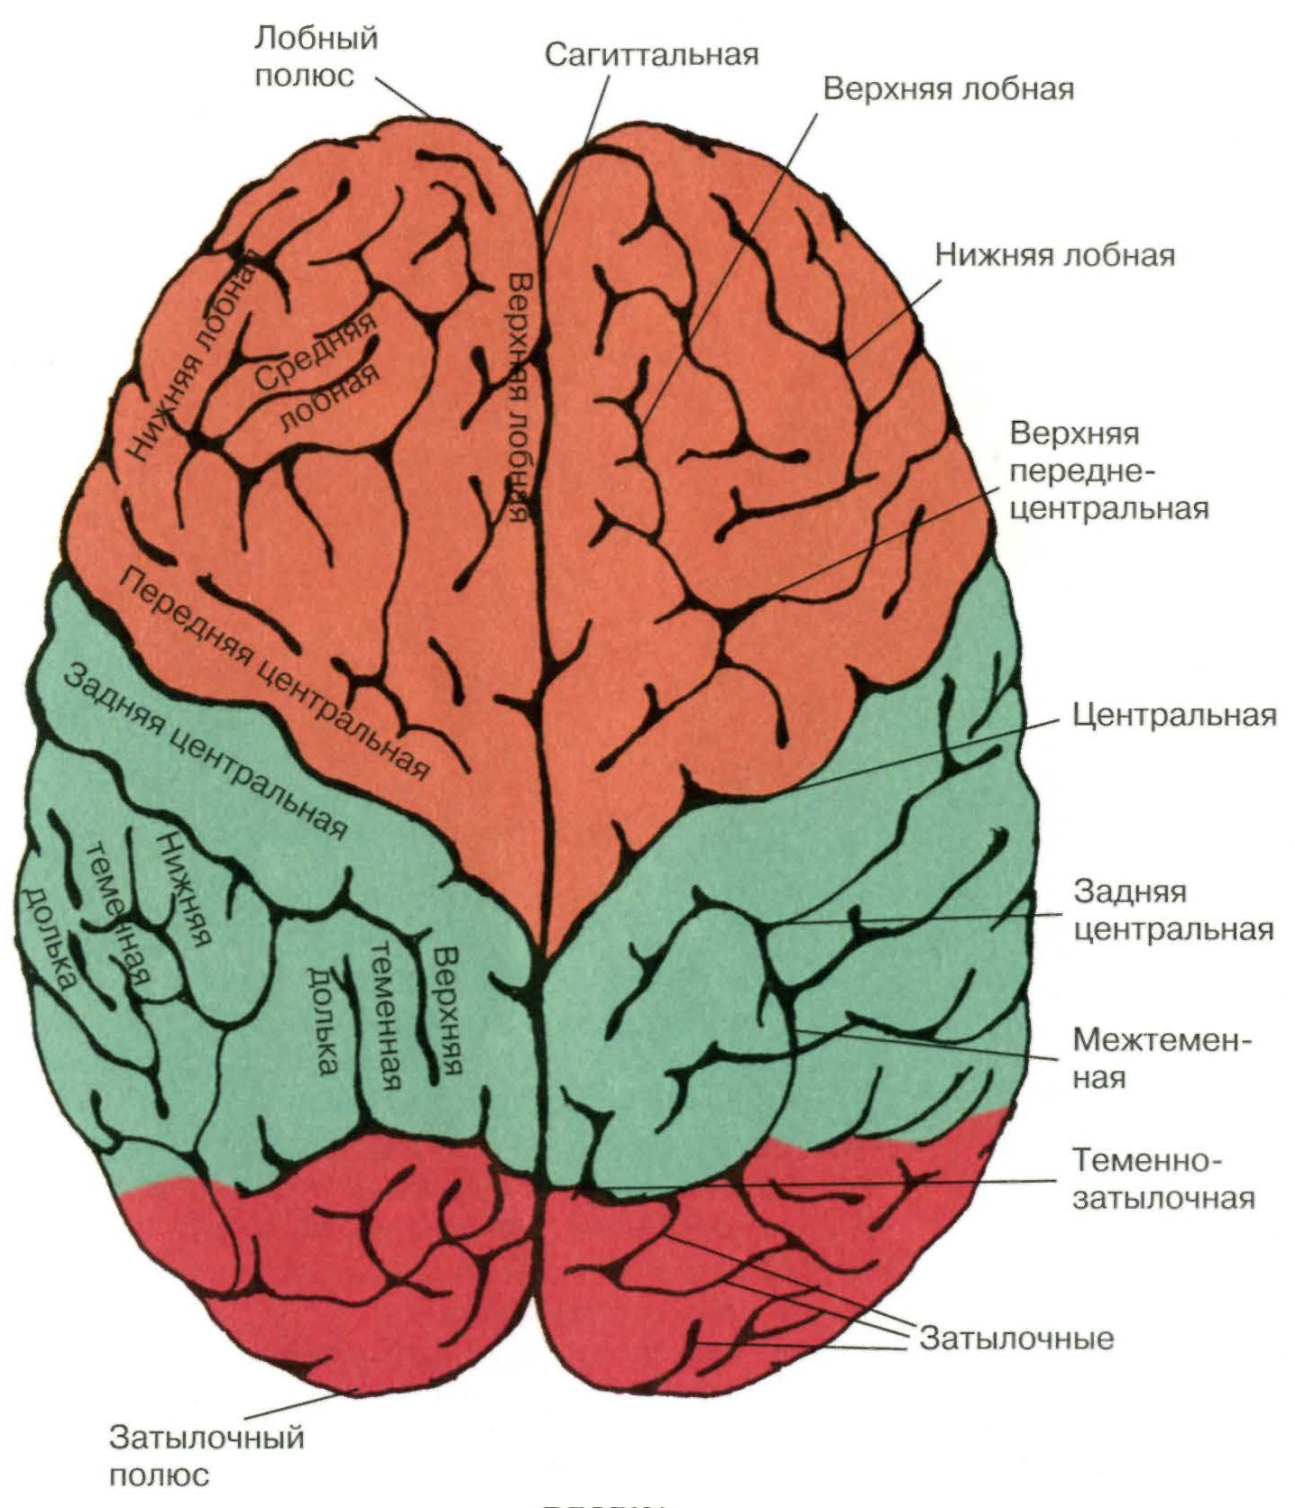 Задние доли мозга. Нижний теменной отдел левого полушария. Лобная дога большого мозга. Строение лобной доли головного мозга.